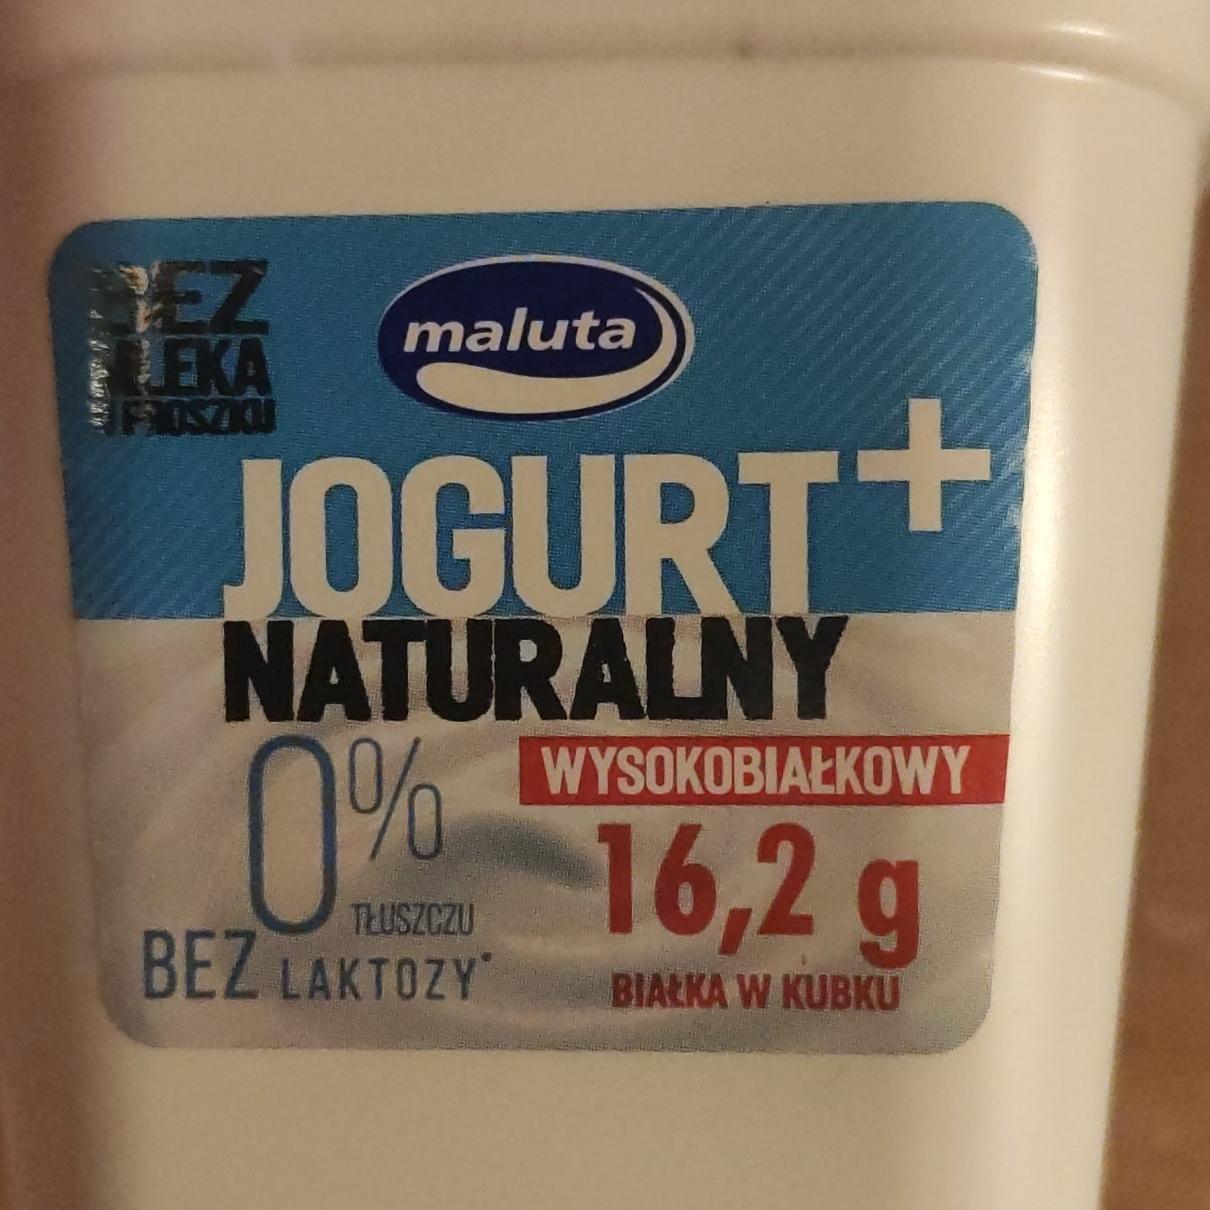 Zdjęcia - Jogurt naturalny + wysokobiałkowy bez laktozy Maluta